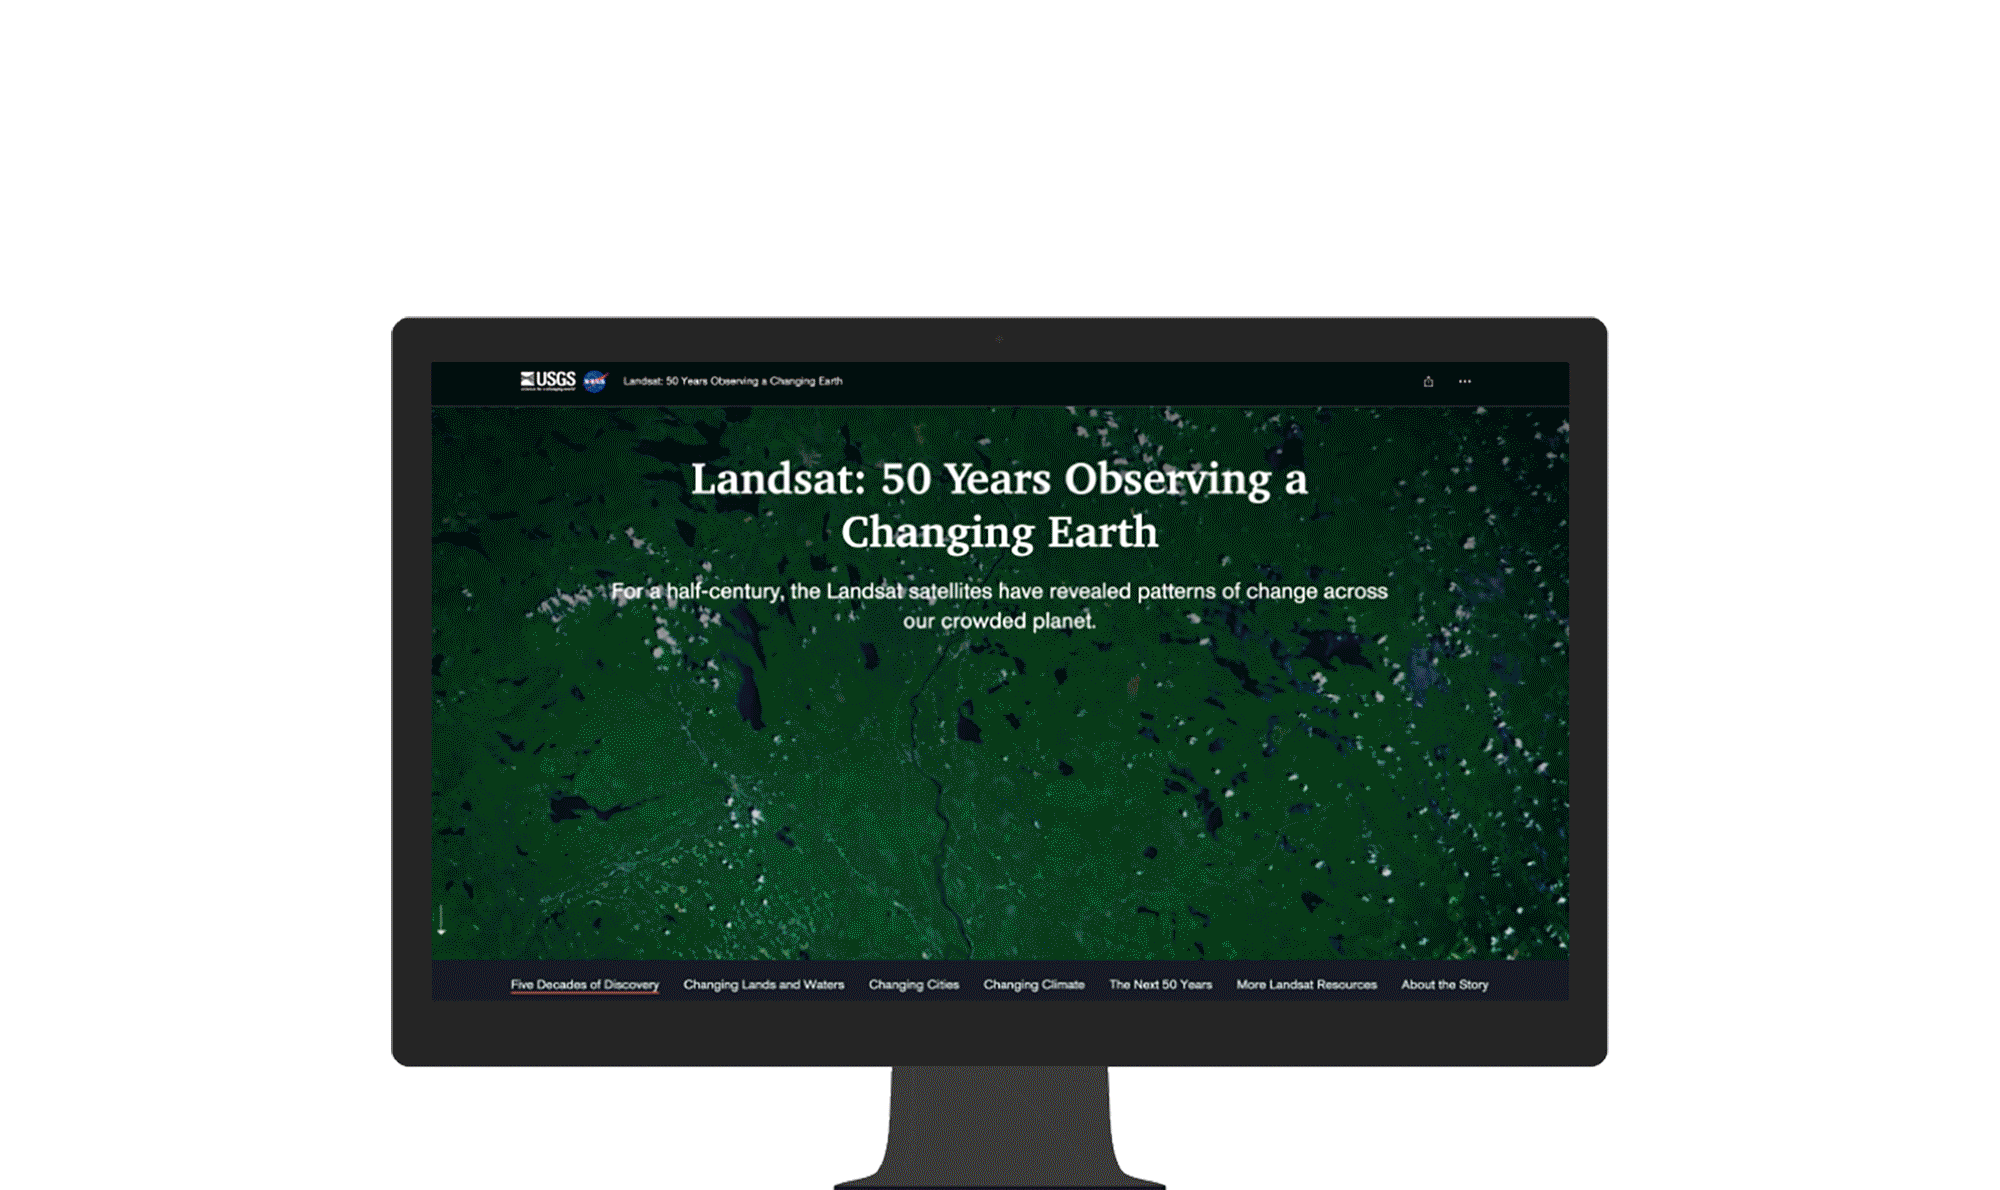 Écran d’ordinateur affichant un article avec du texte et une imagerie aérienne d’un sol capturée à partir du satellite Landsat.